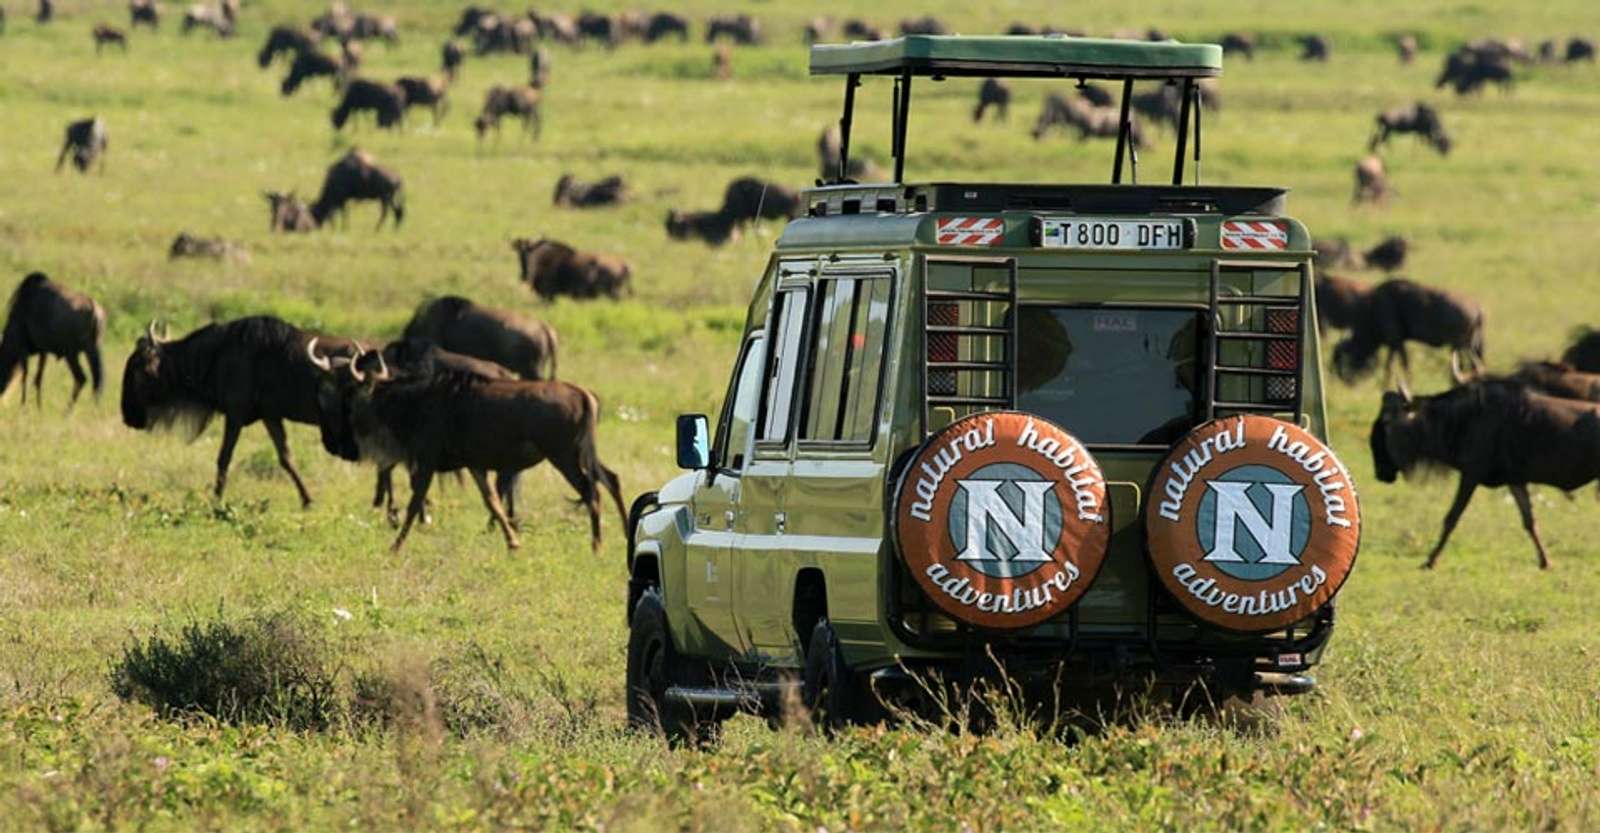 Wildebeests and Nat Hab guests in safari vehicle, Serengeti National Park, Tanzania.